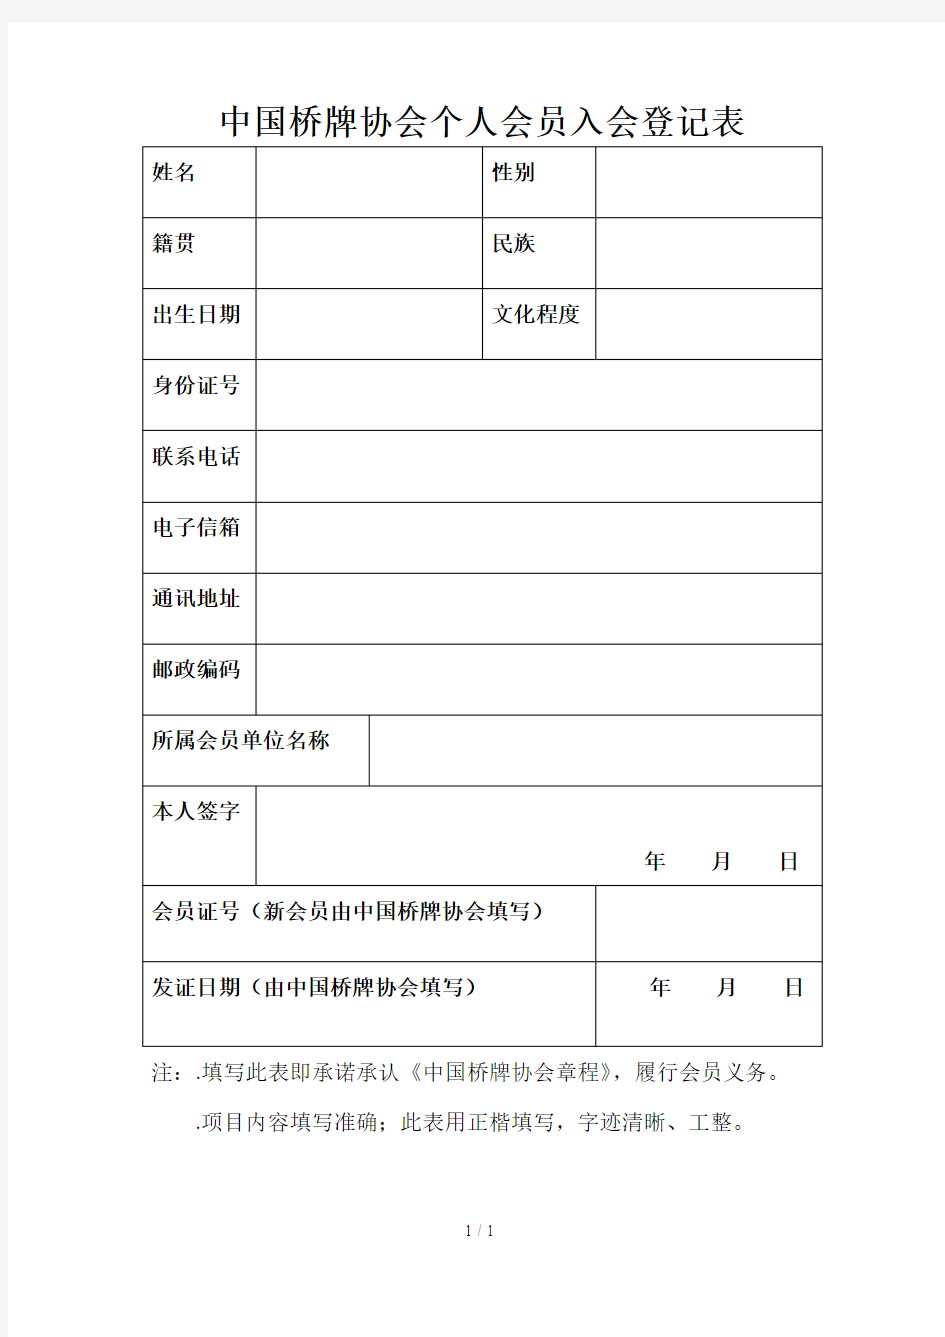 中国桥牌协会个人会员入会登记表